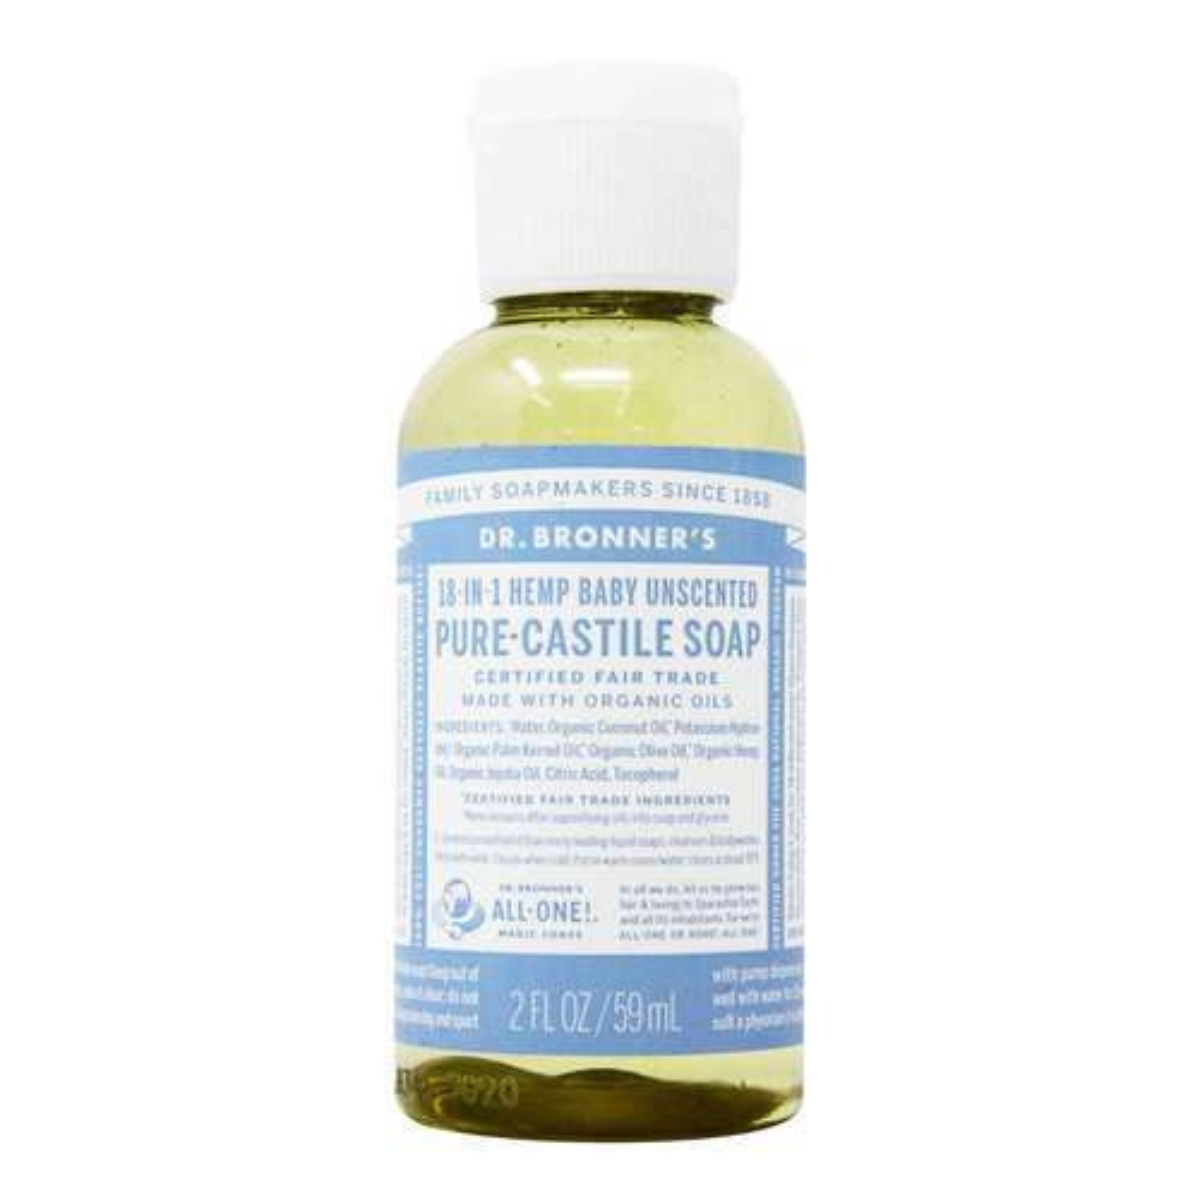 Castile Liquid Soap, Organic, Hemp Unscented Baby- Mild